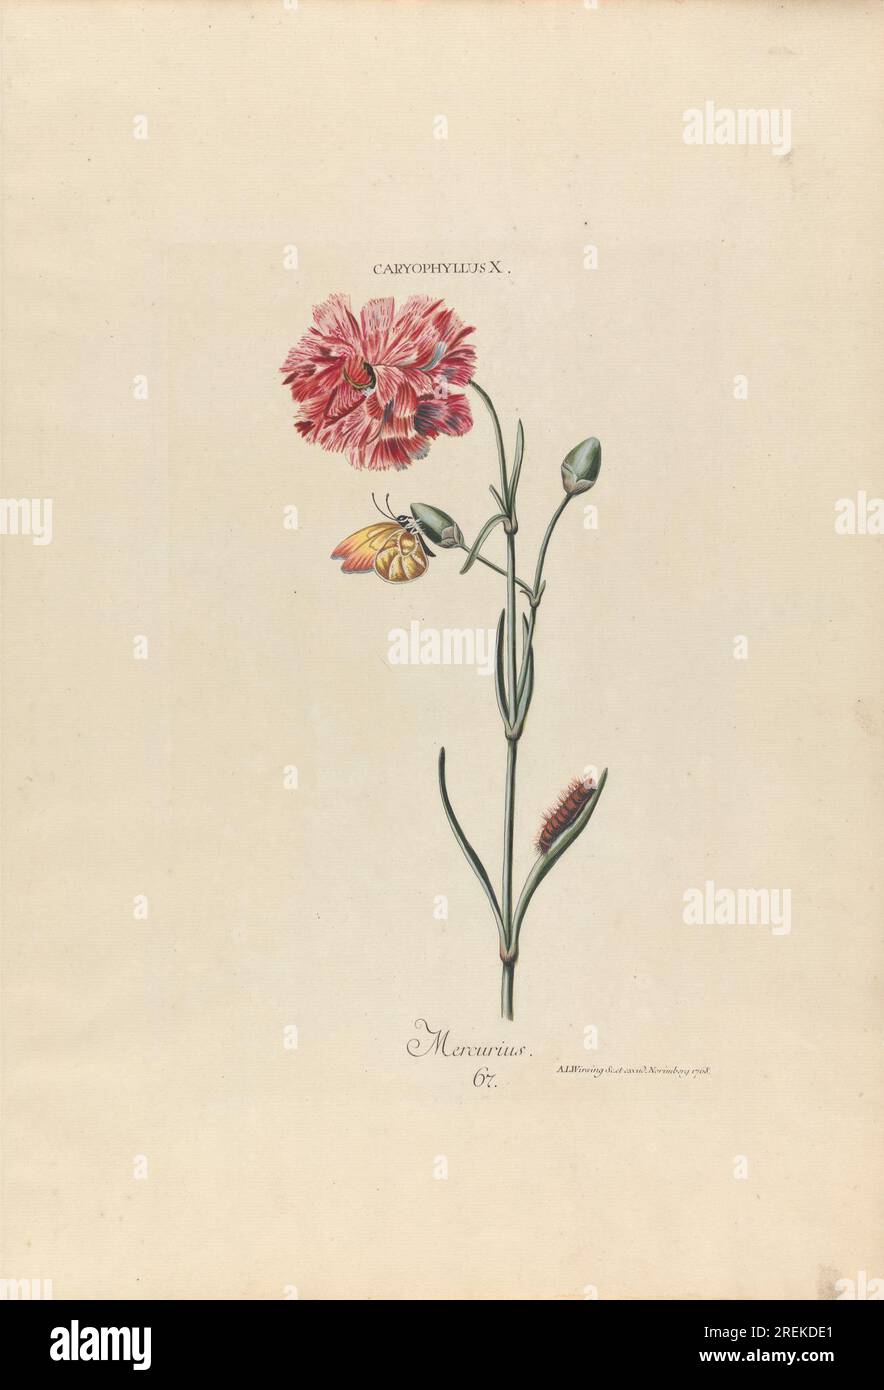 Caryophyllus X. Mercurius. Plate 67 from 'Hortus Nitidissimis Omnem per Annum Superbiens Floribus', Nuremberg, 1768 1768 by Adam Ludwig Wirsing Stock Photo